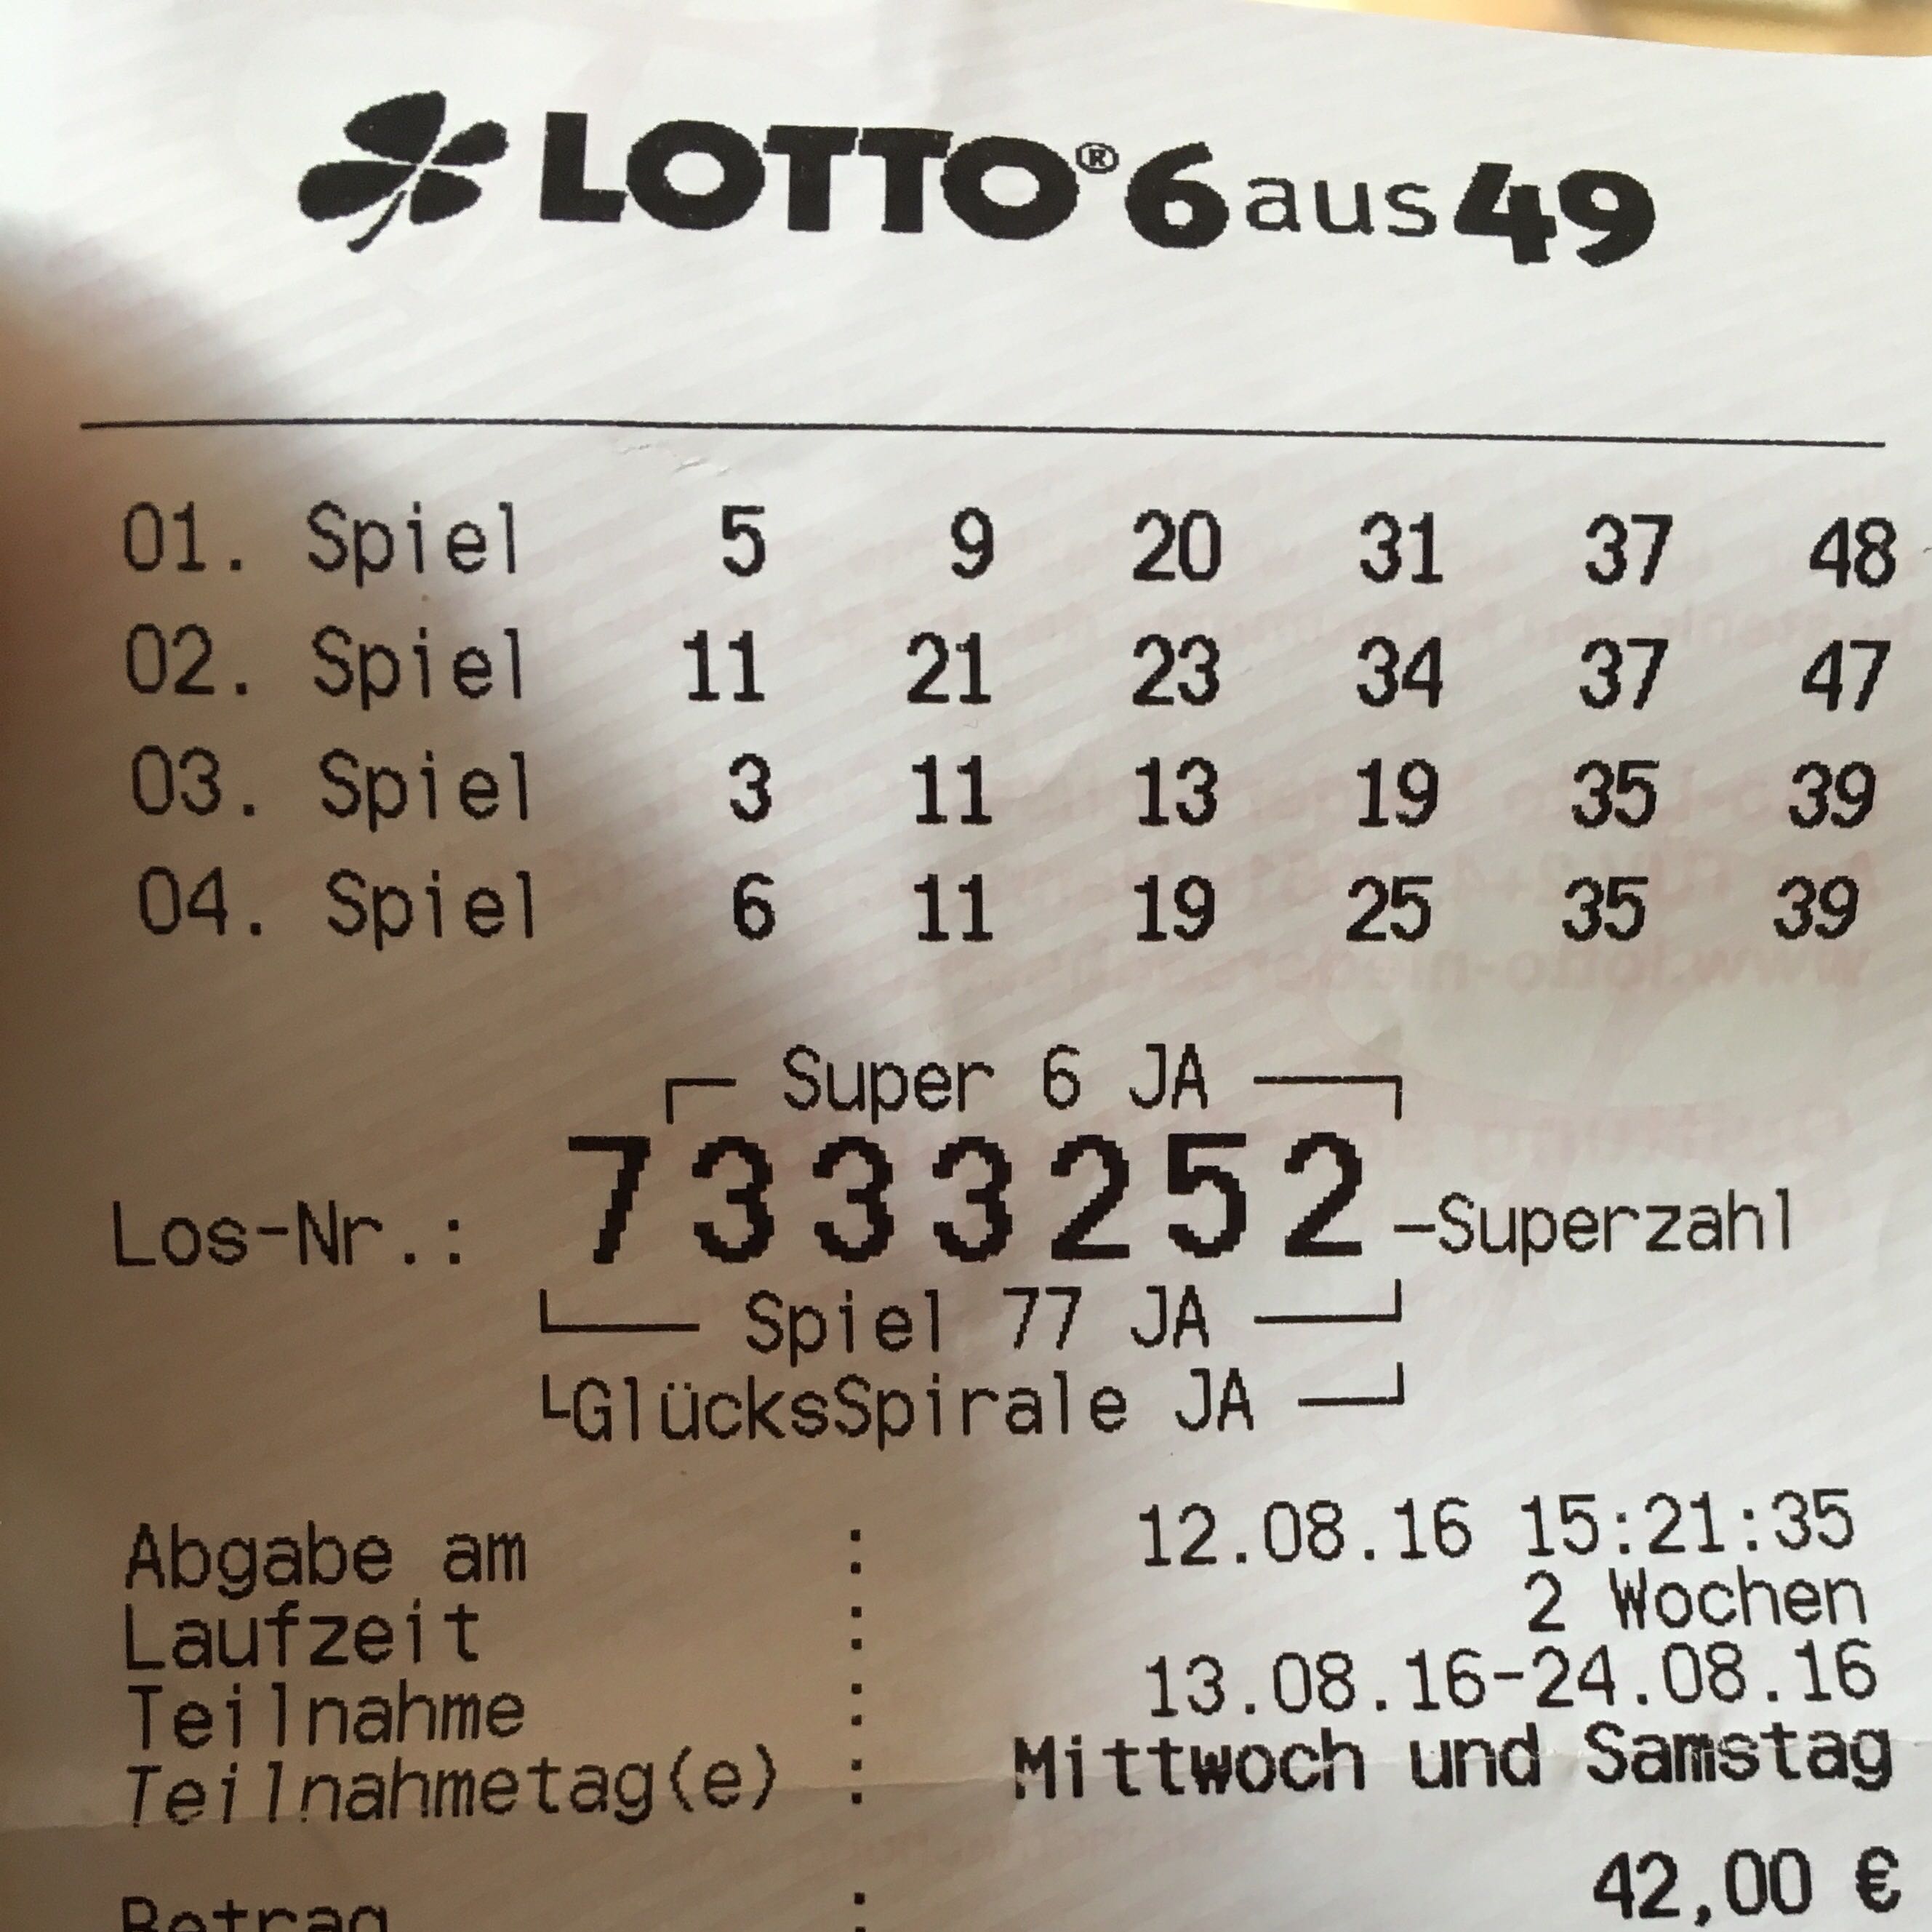 Super Lottoschein